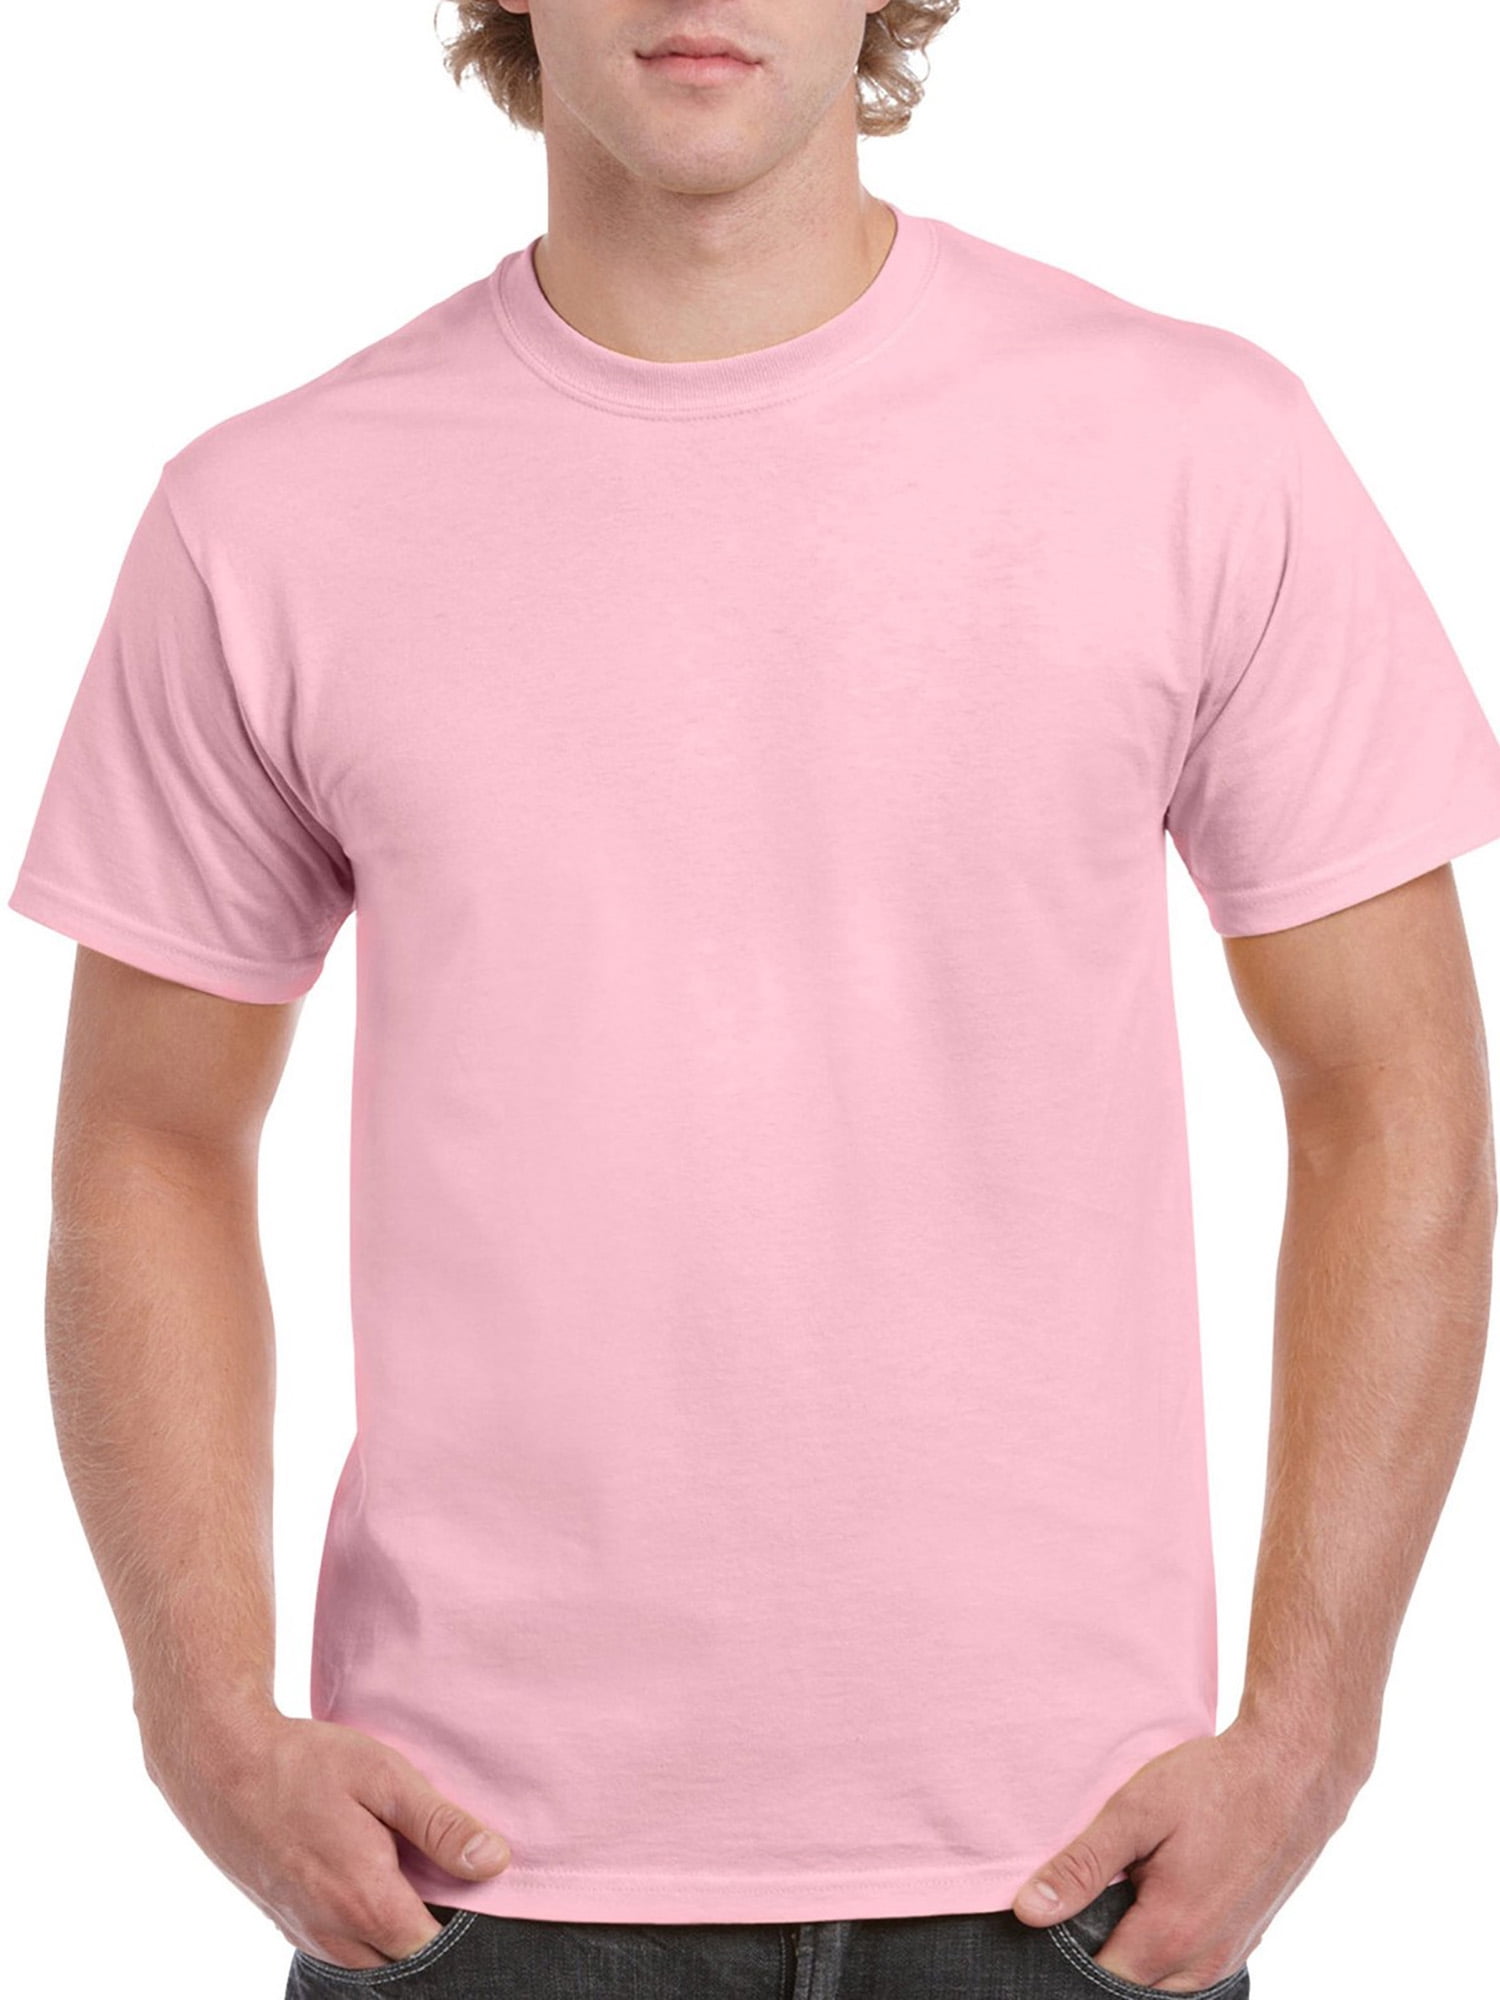 plain light pink t shirt